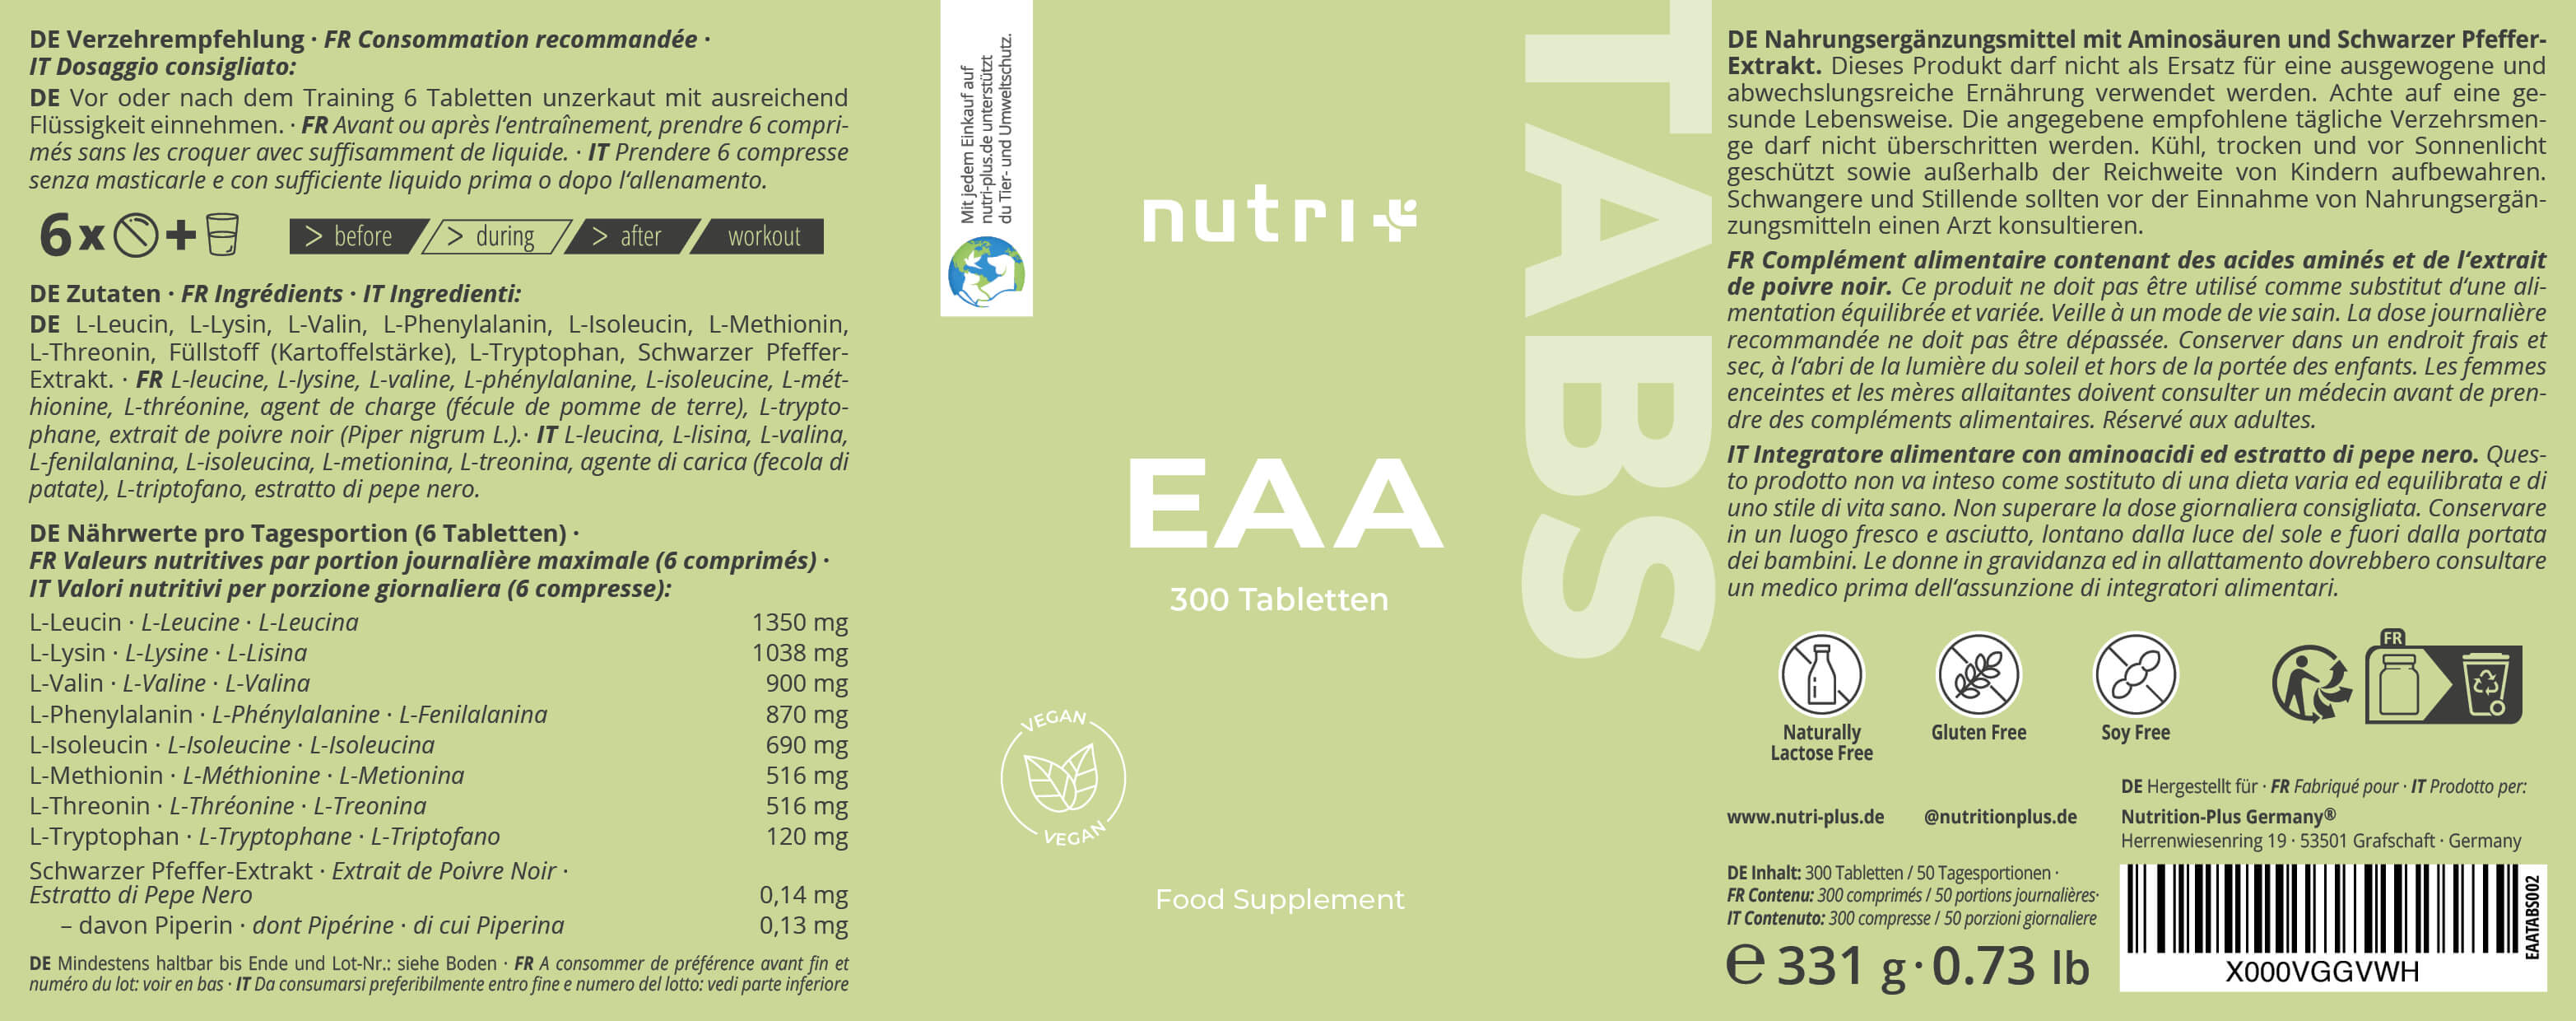 EAA Tabletten